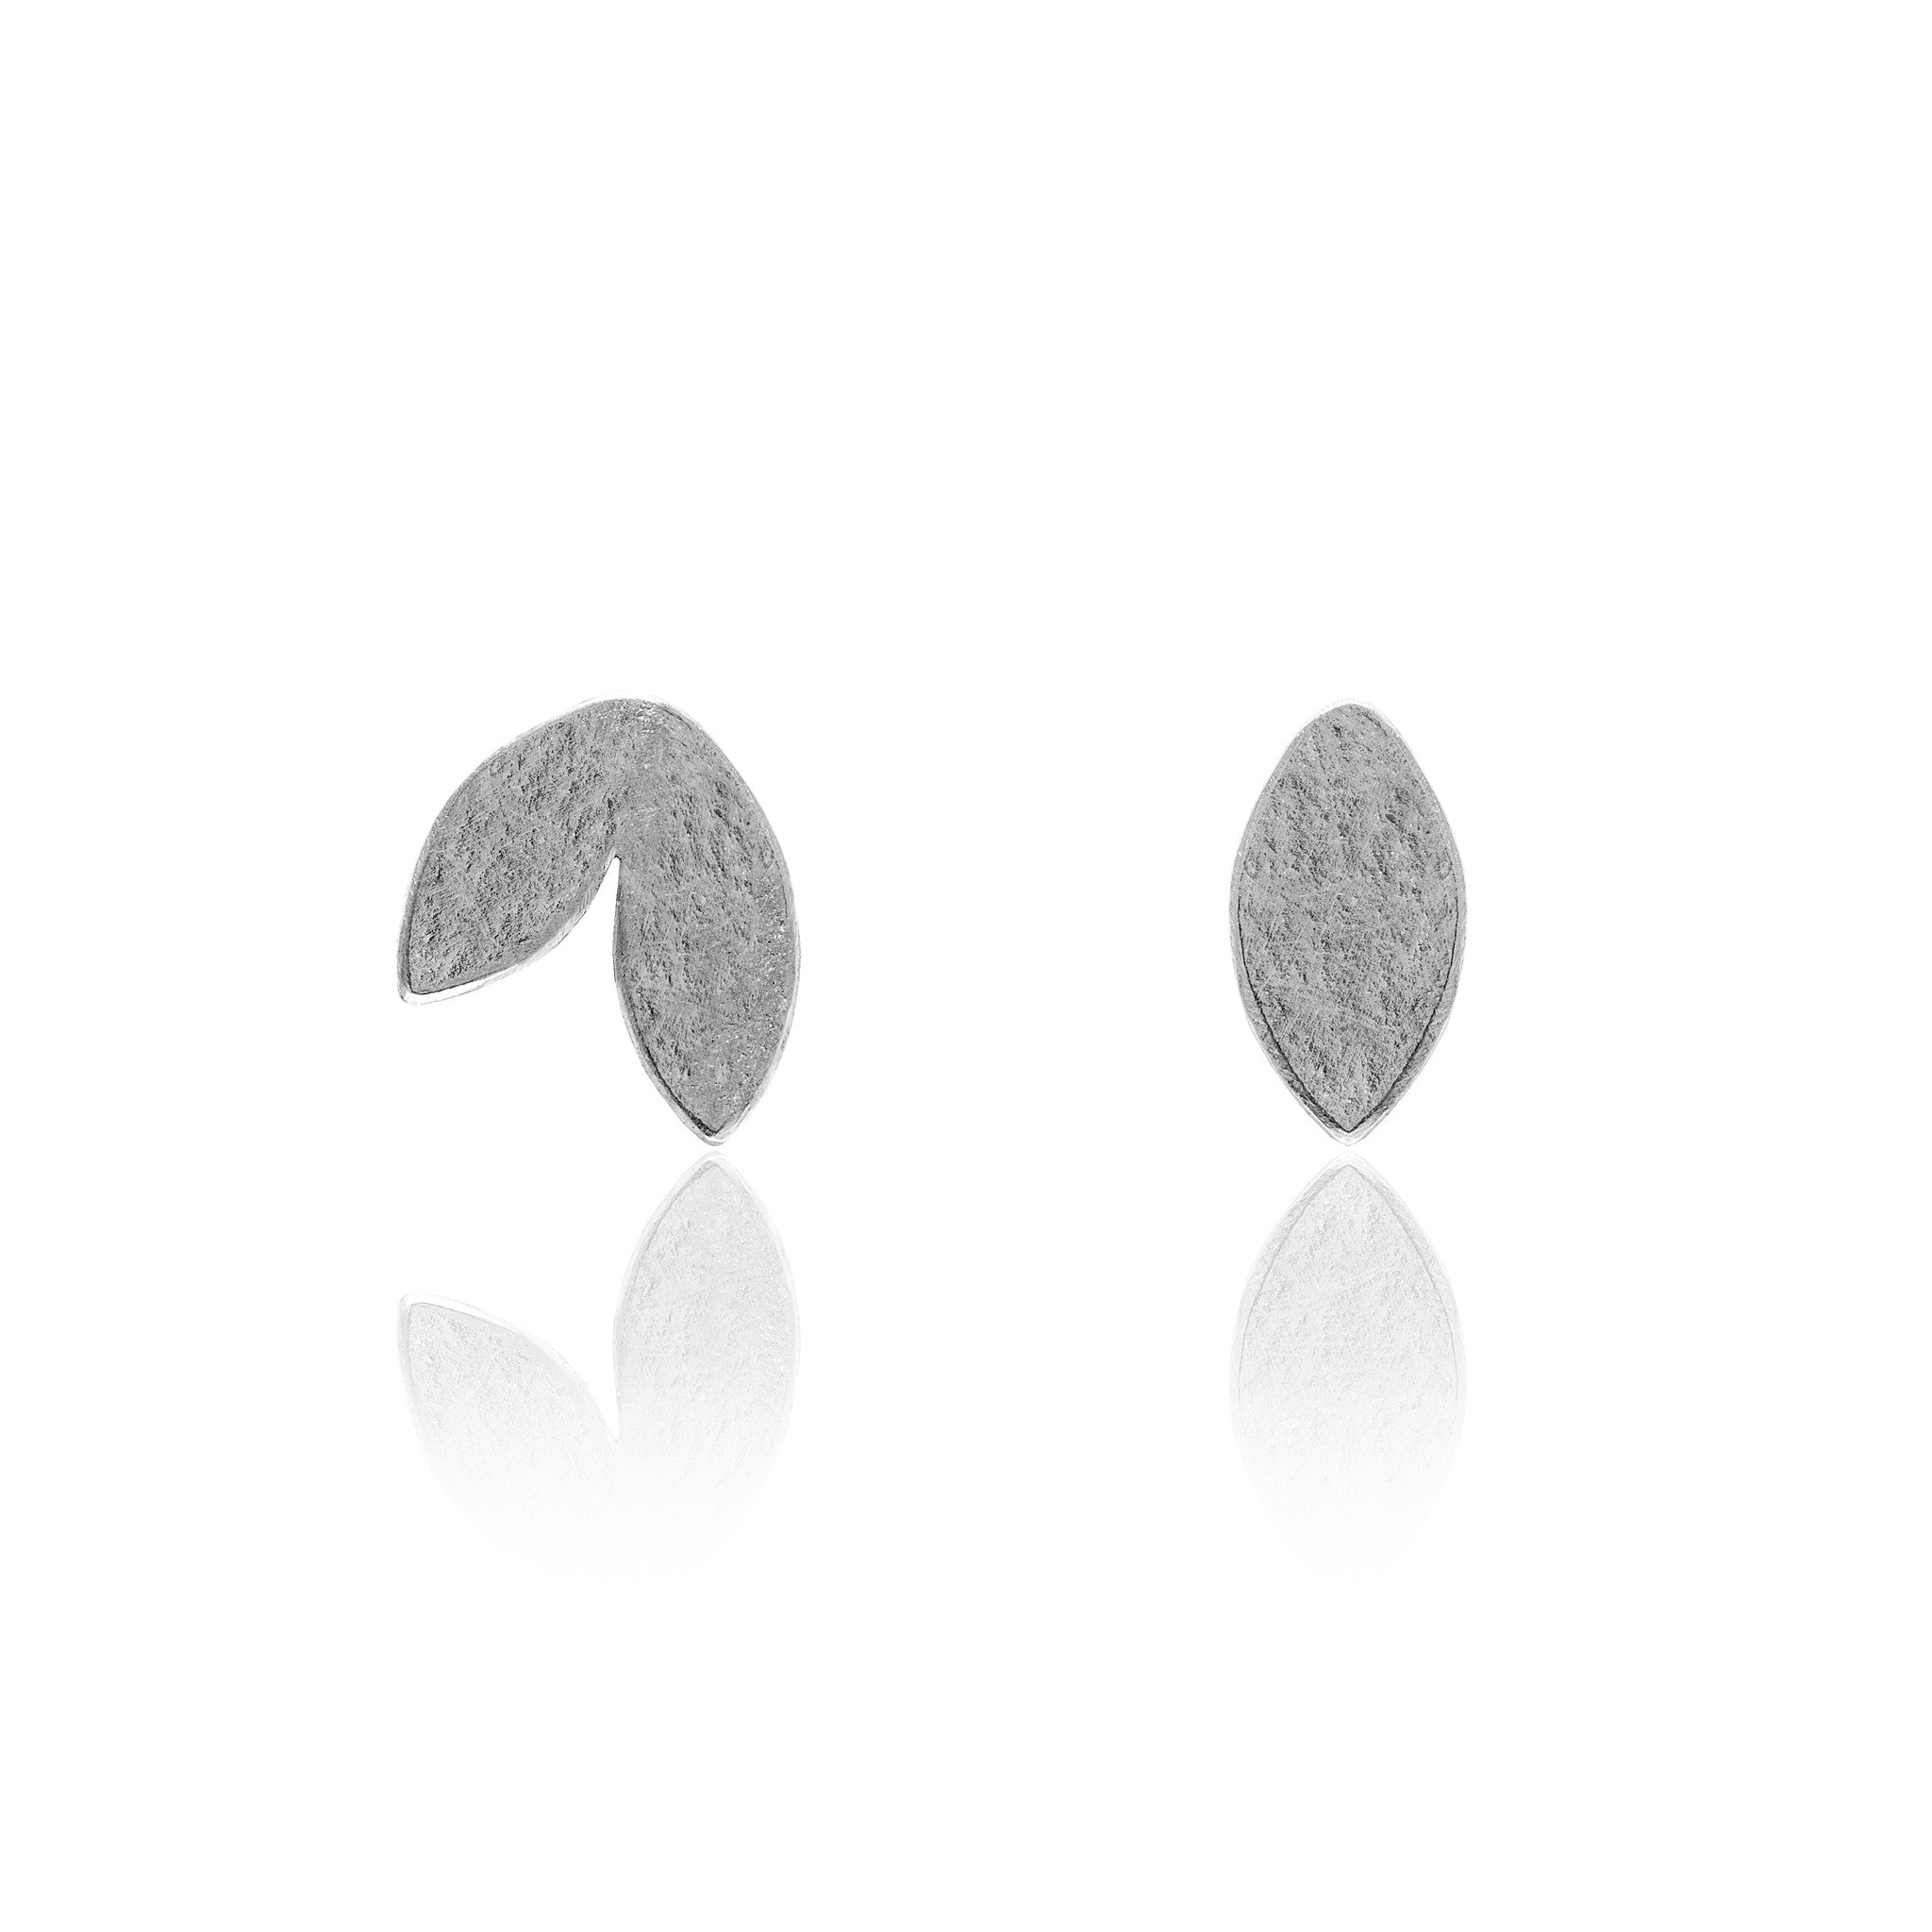 Spring earrings in sterling silver - READY TO WEAR